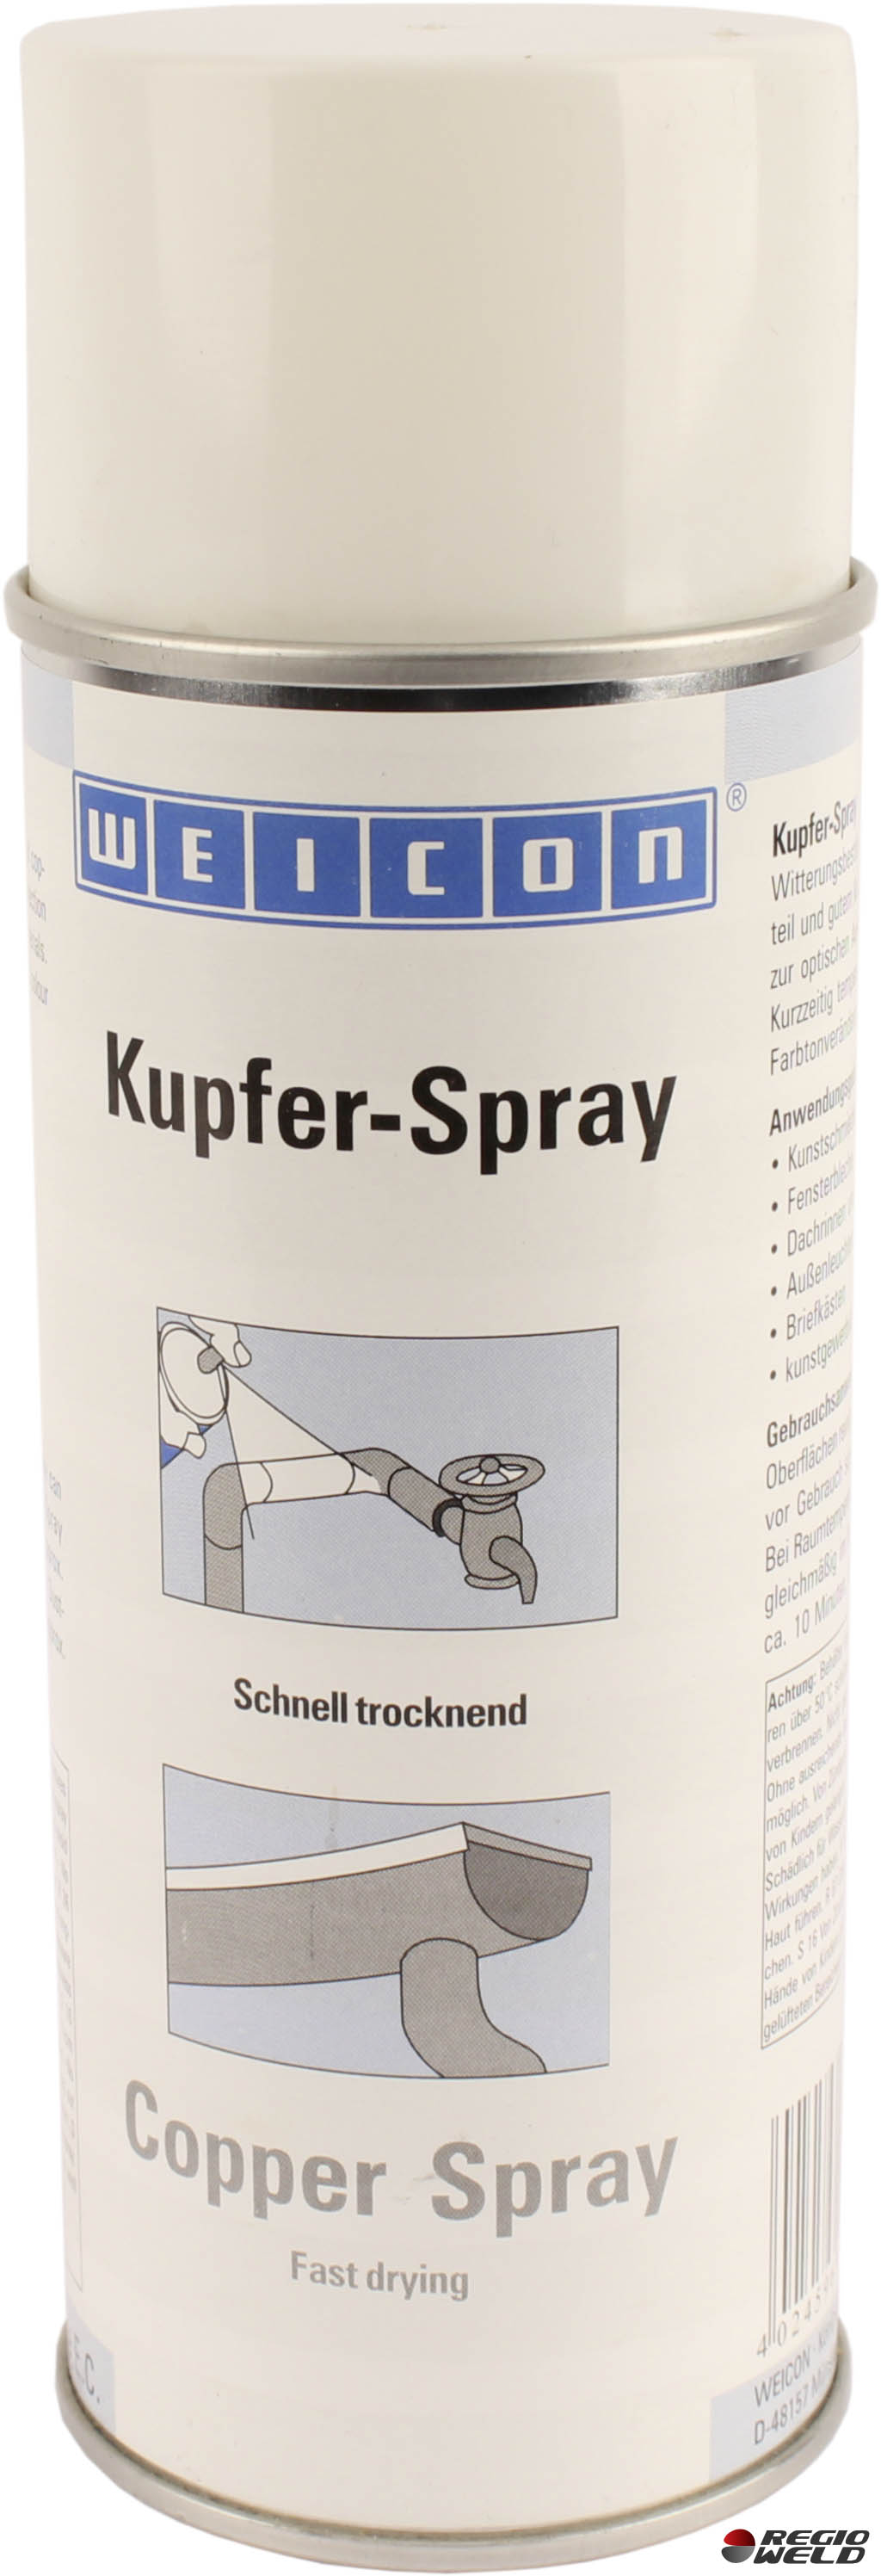 WEICON Kupferpaste-Spray 400ml Schutz-, Trenn- und Schmierstoff